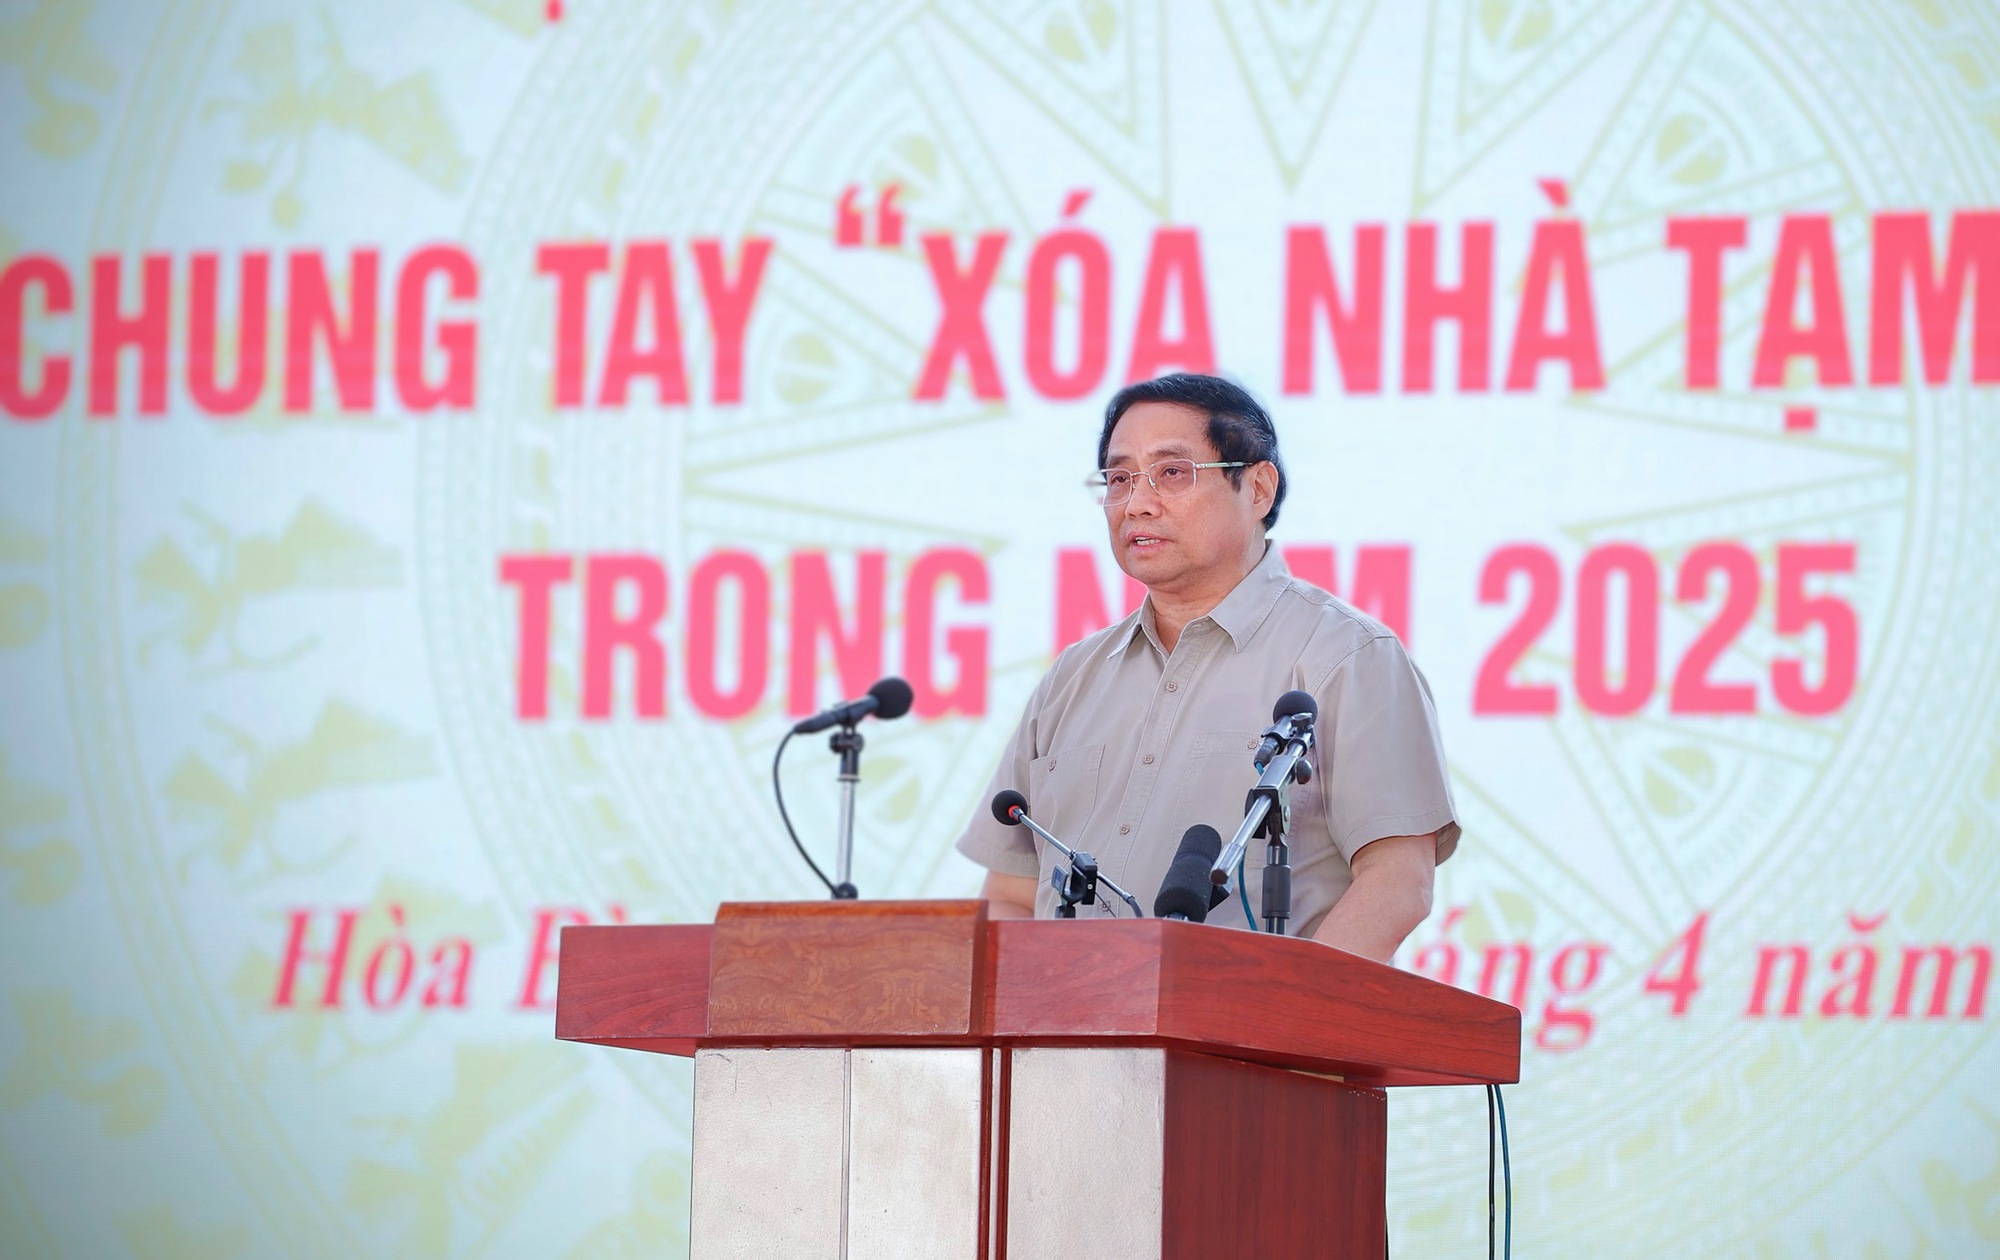 Thủ tướng Phạm Minh Chính: "Ai có gì góp nấy" để xóa nhà tạm, nhà dột nát cho người nghèo